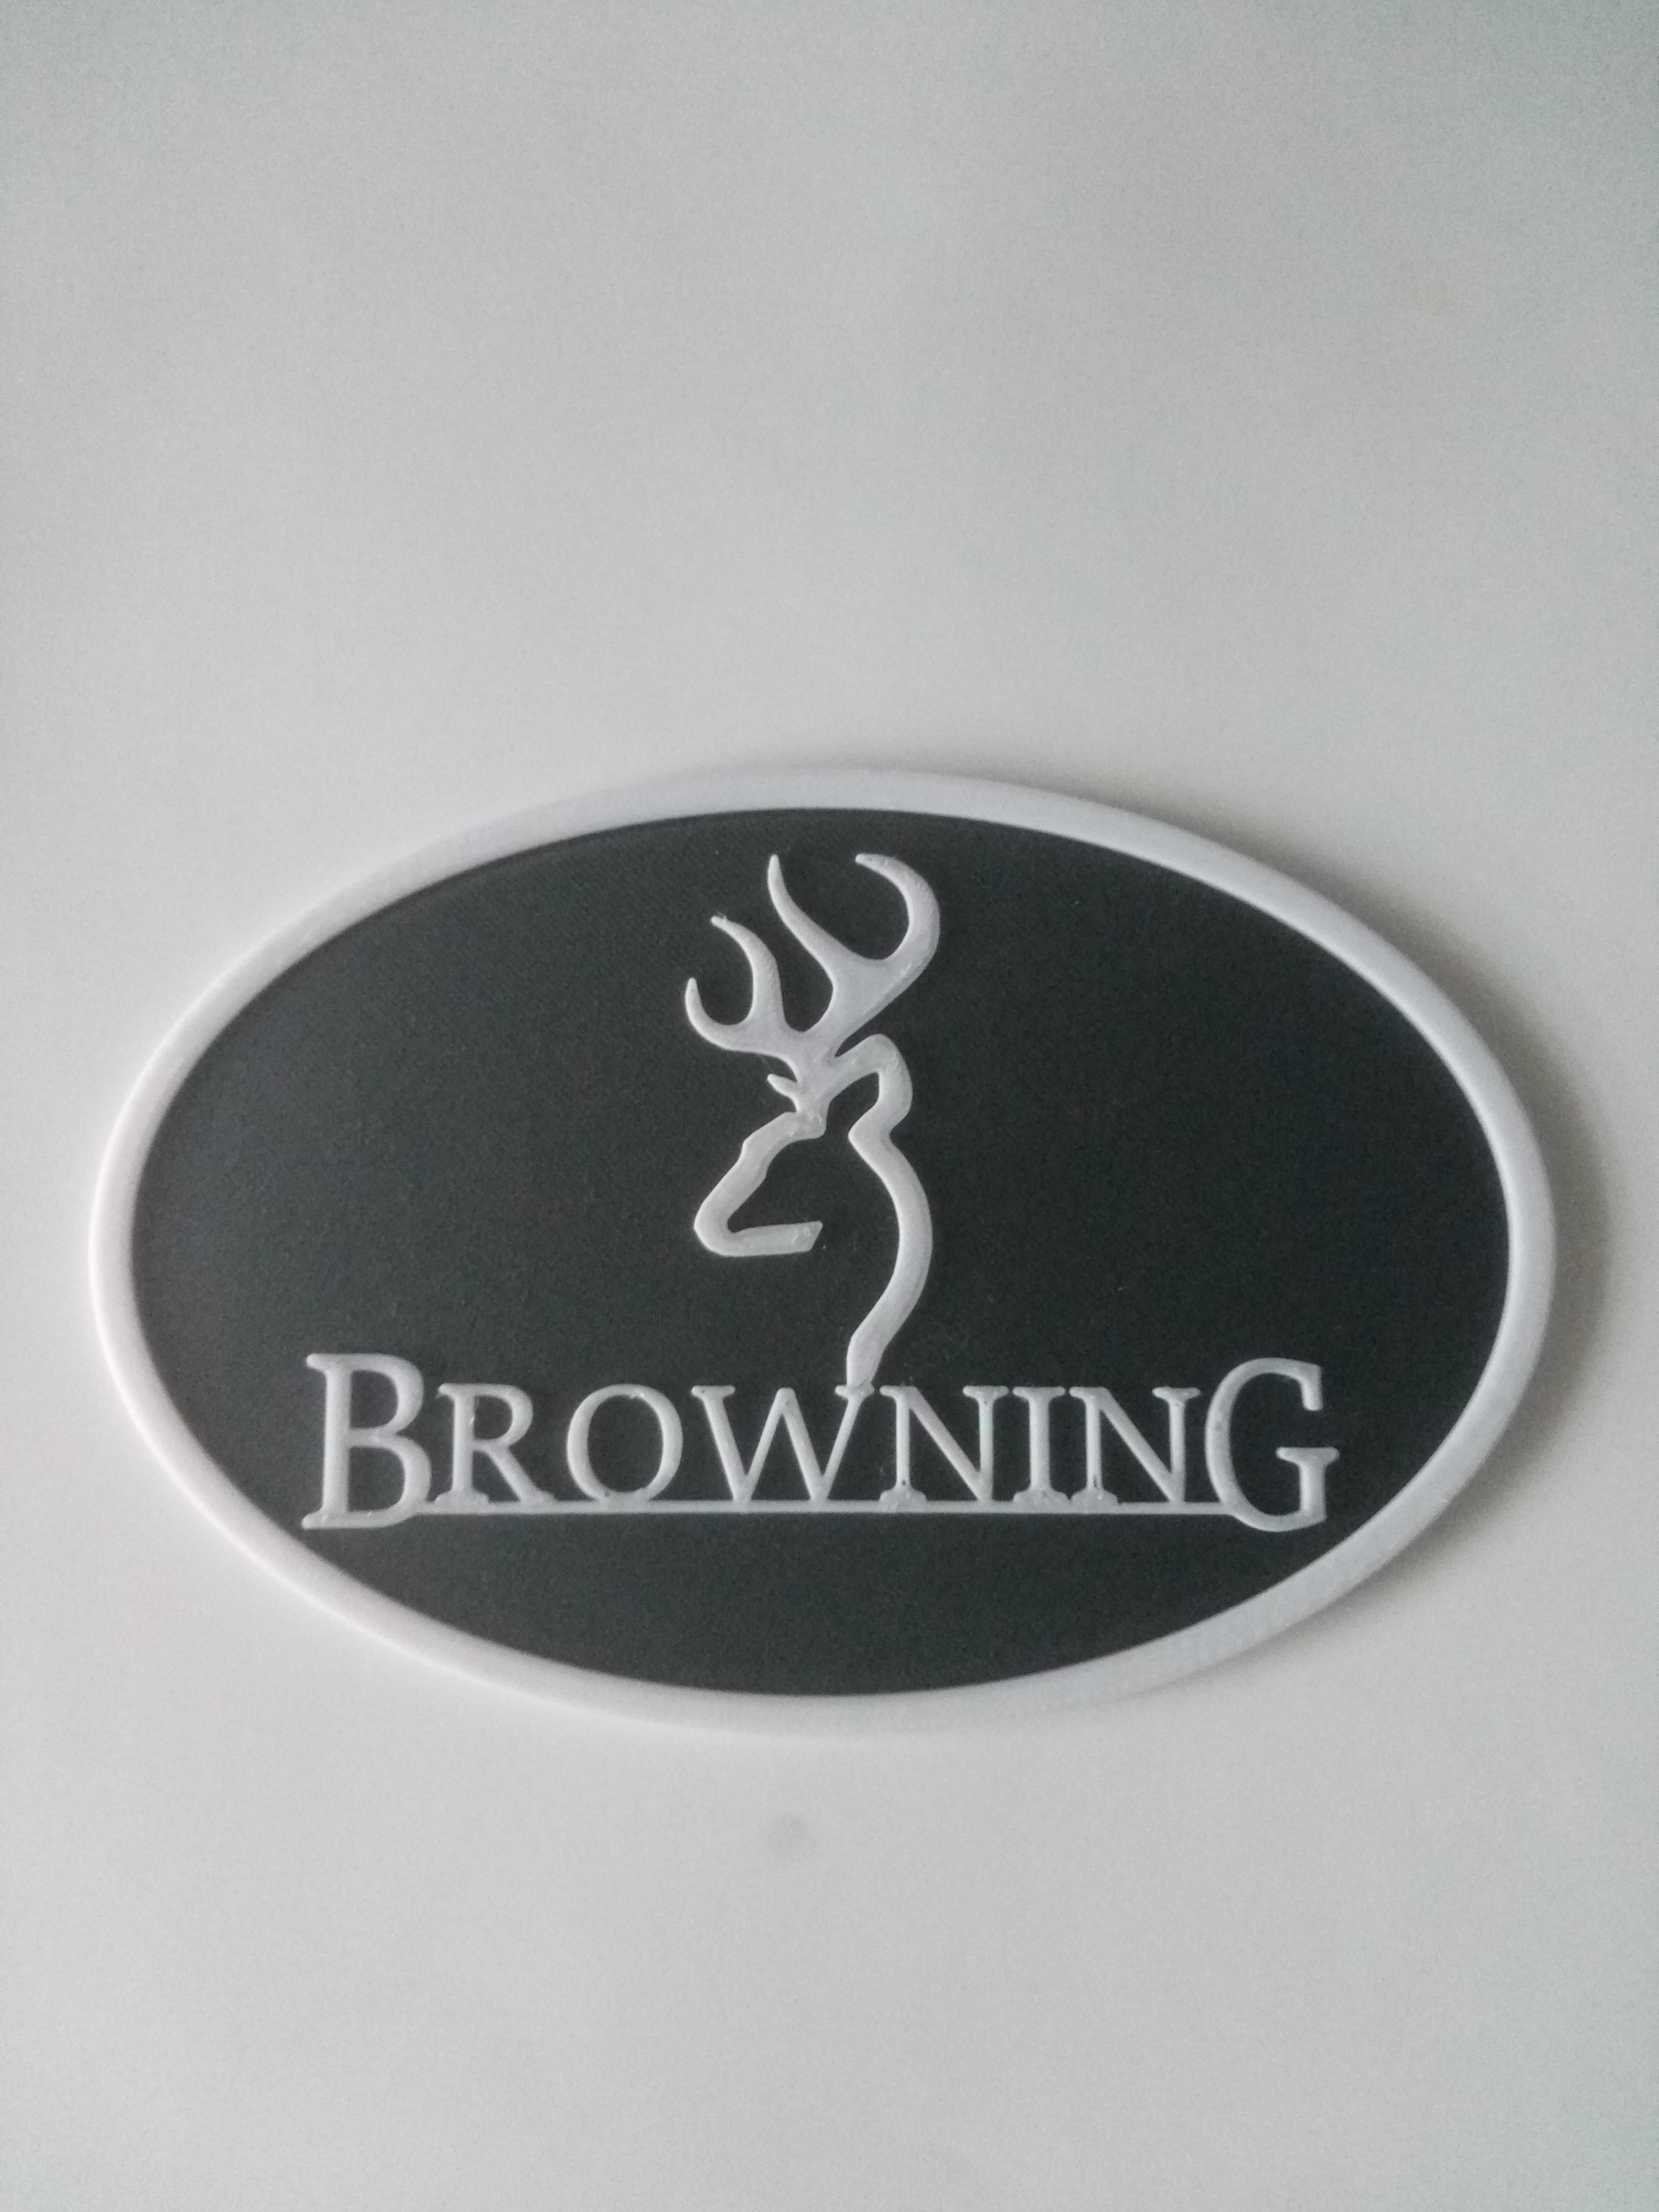 Logo Browning